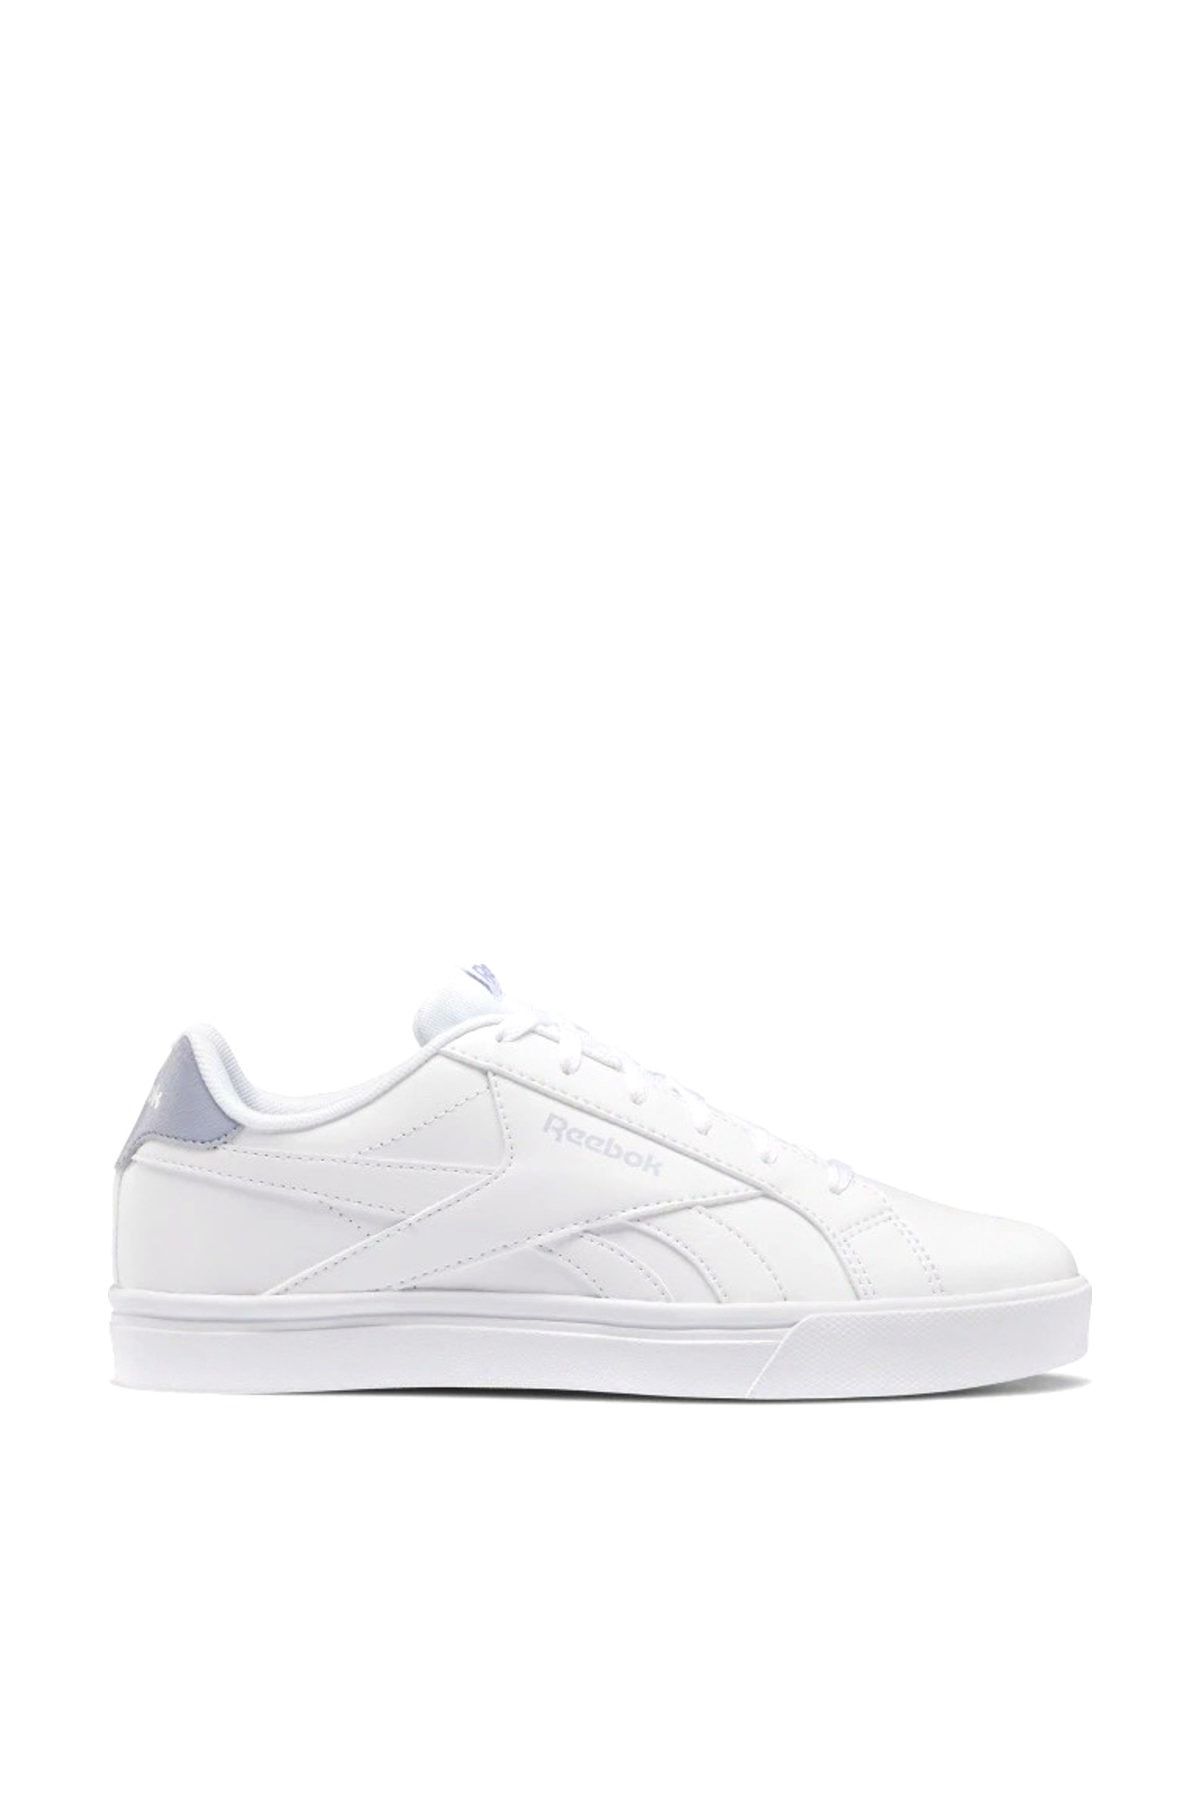 Reebok ROYAL COMPLE Beyaz Kadın Sneaker Ayakkabı 100479545